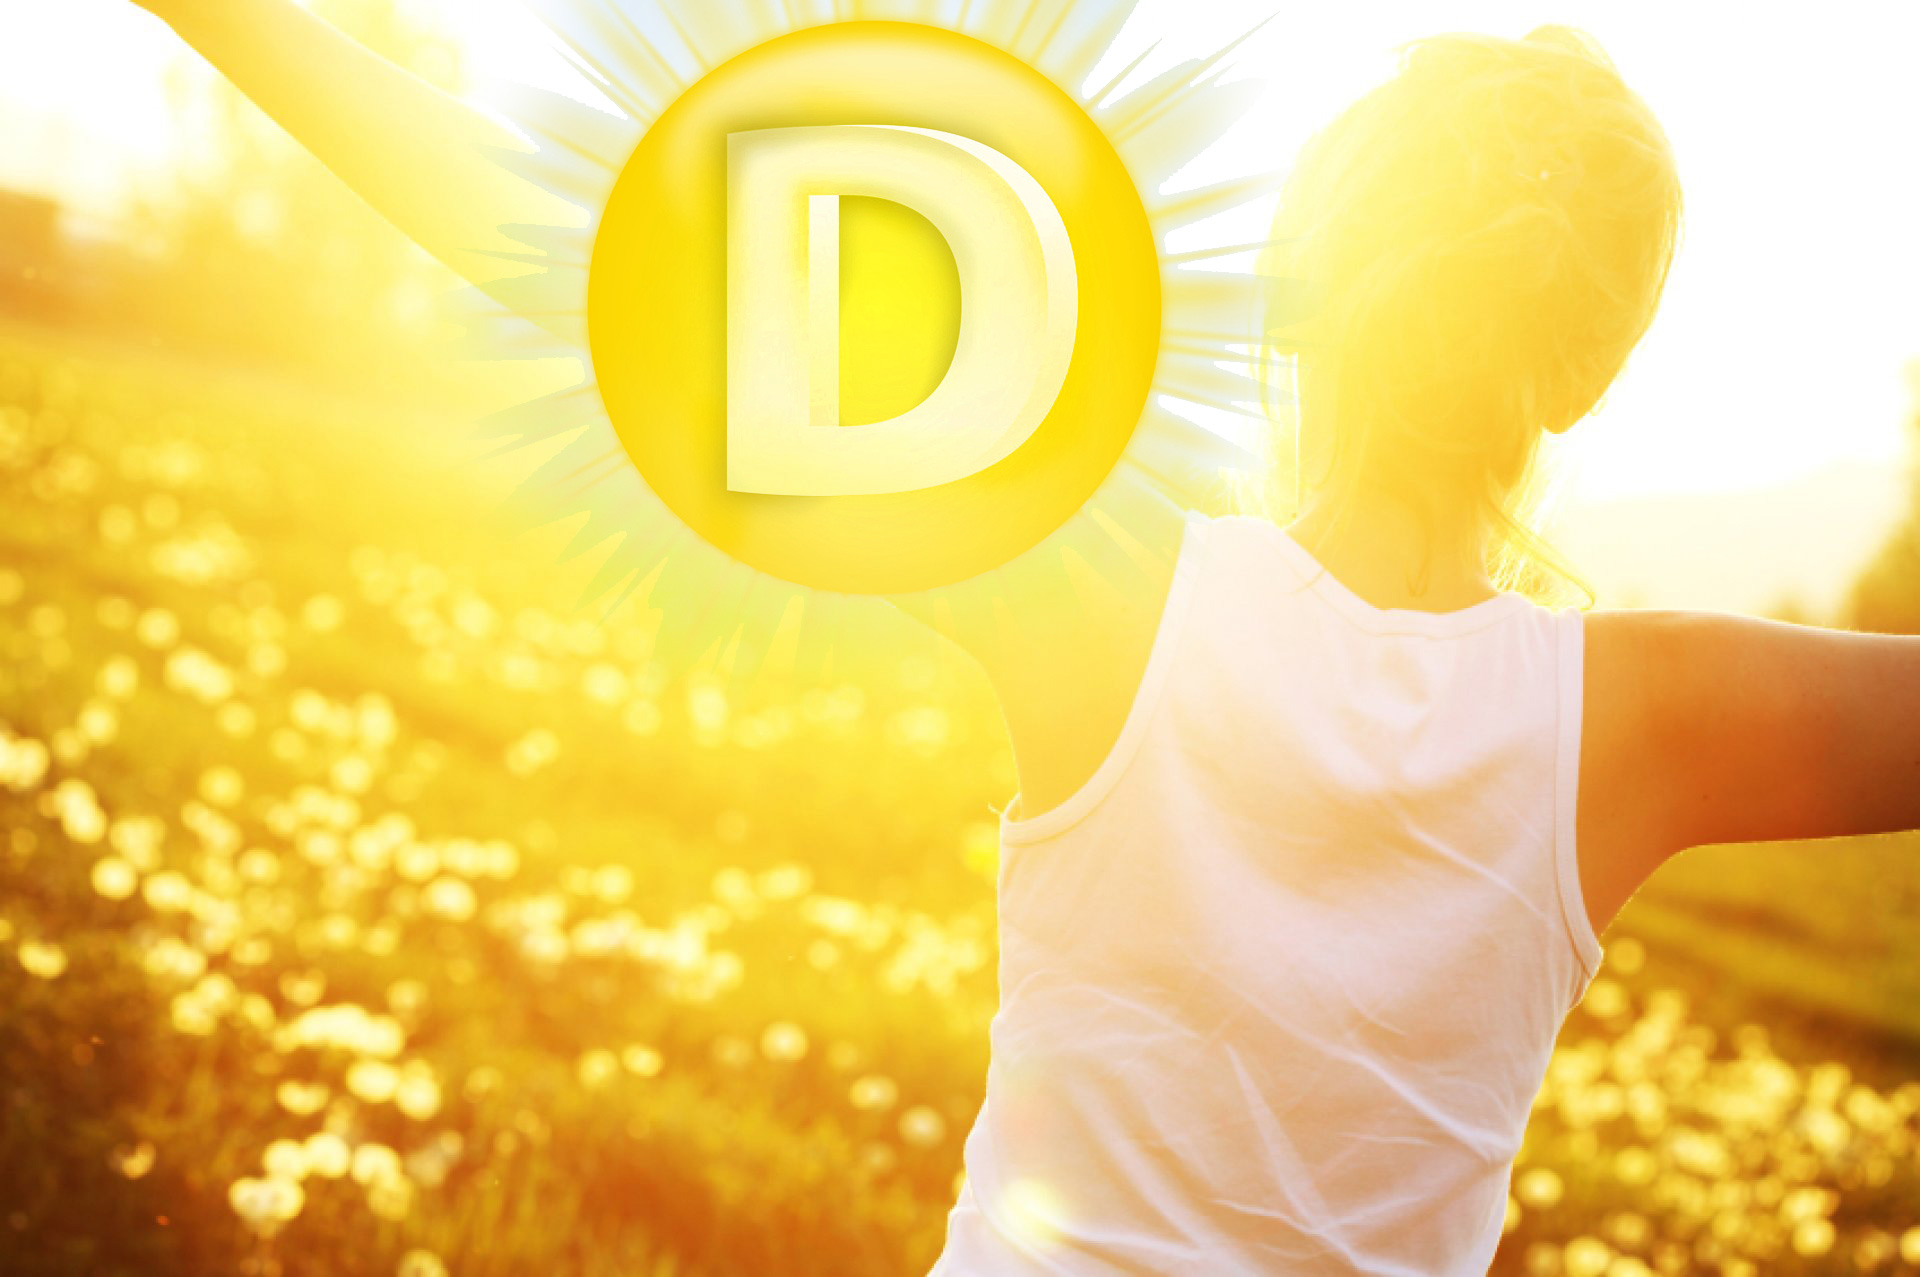 Достаточно ли регулярного пребывания на солнце для поддержания оптимального уровня витамина D?